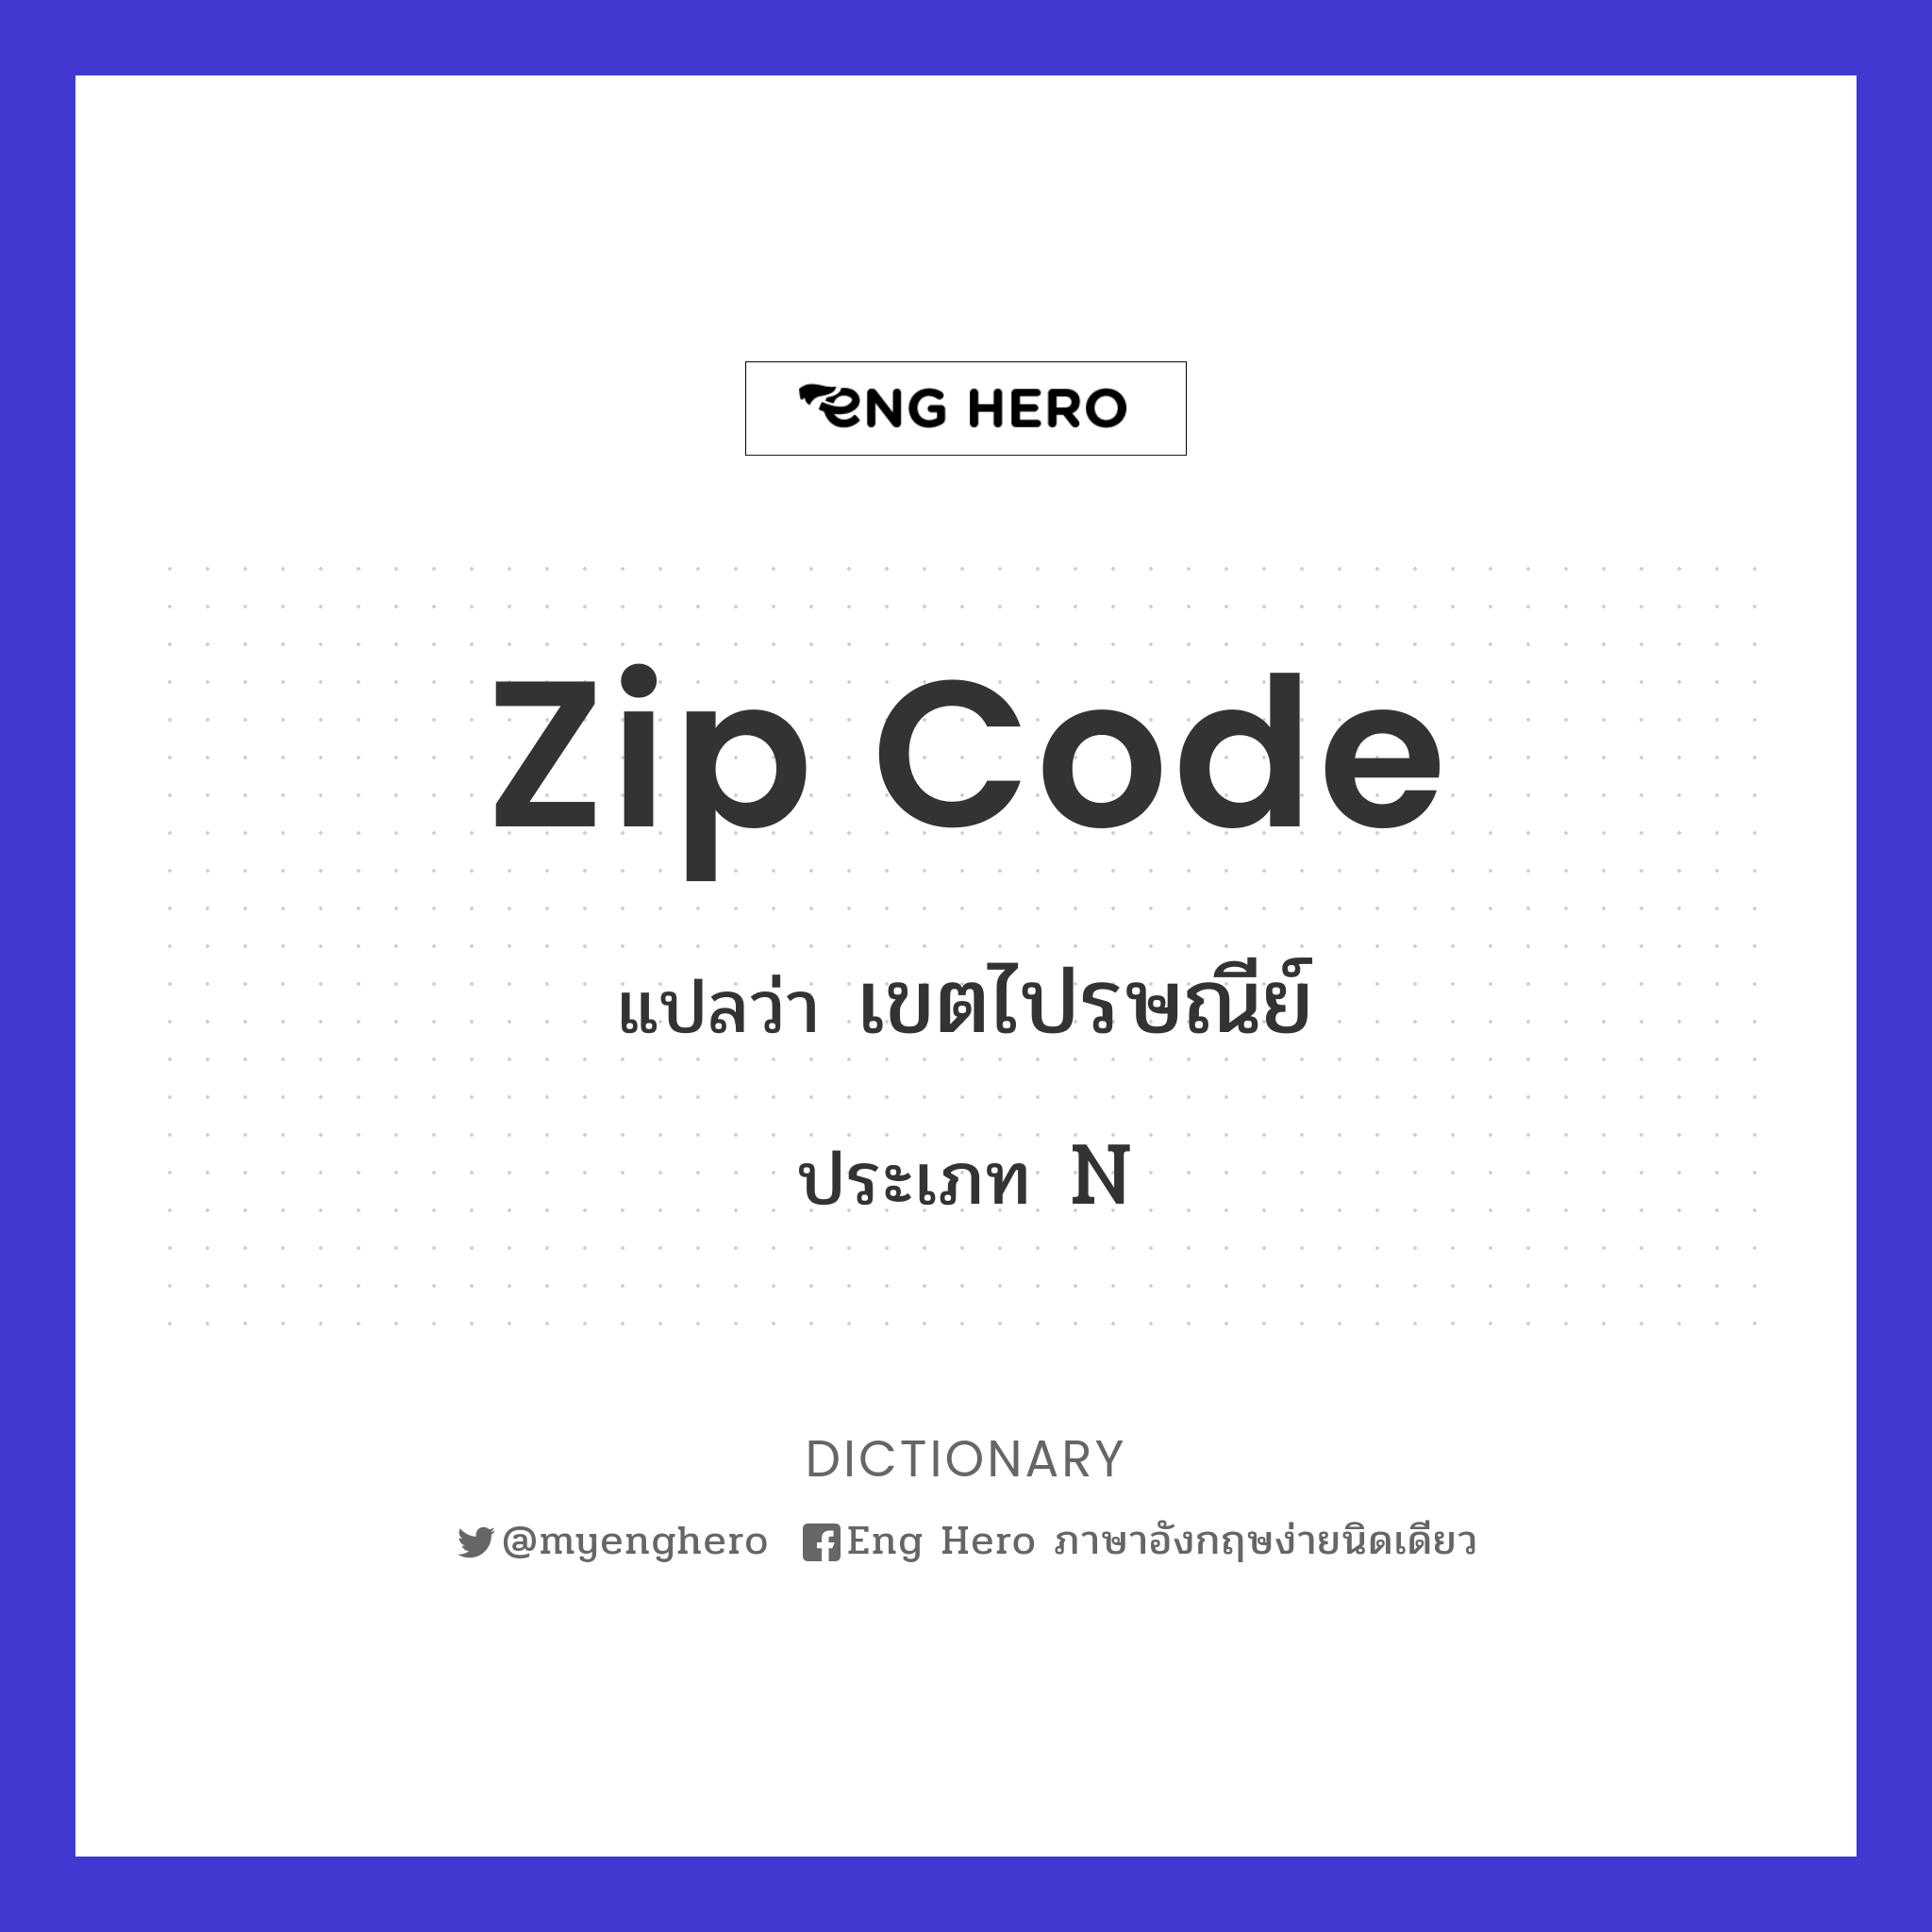 Zip code